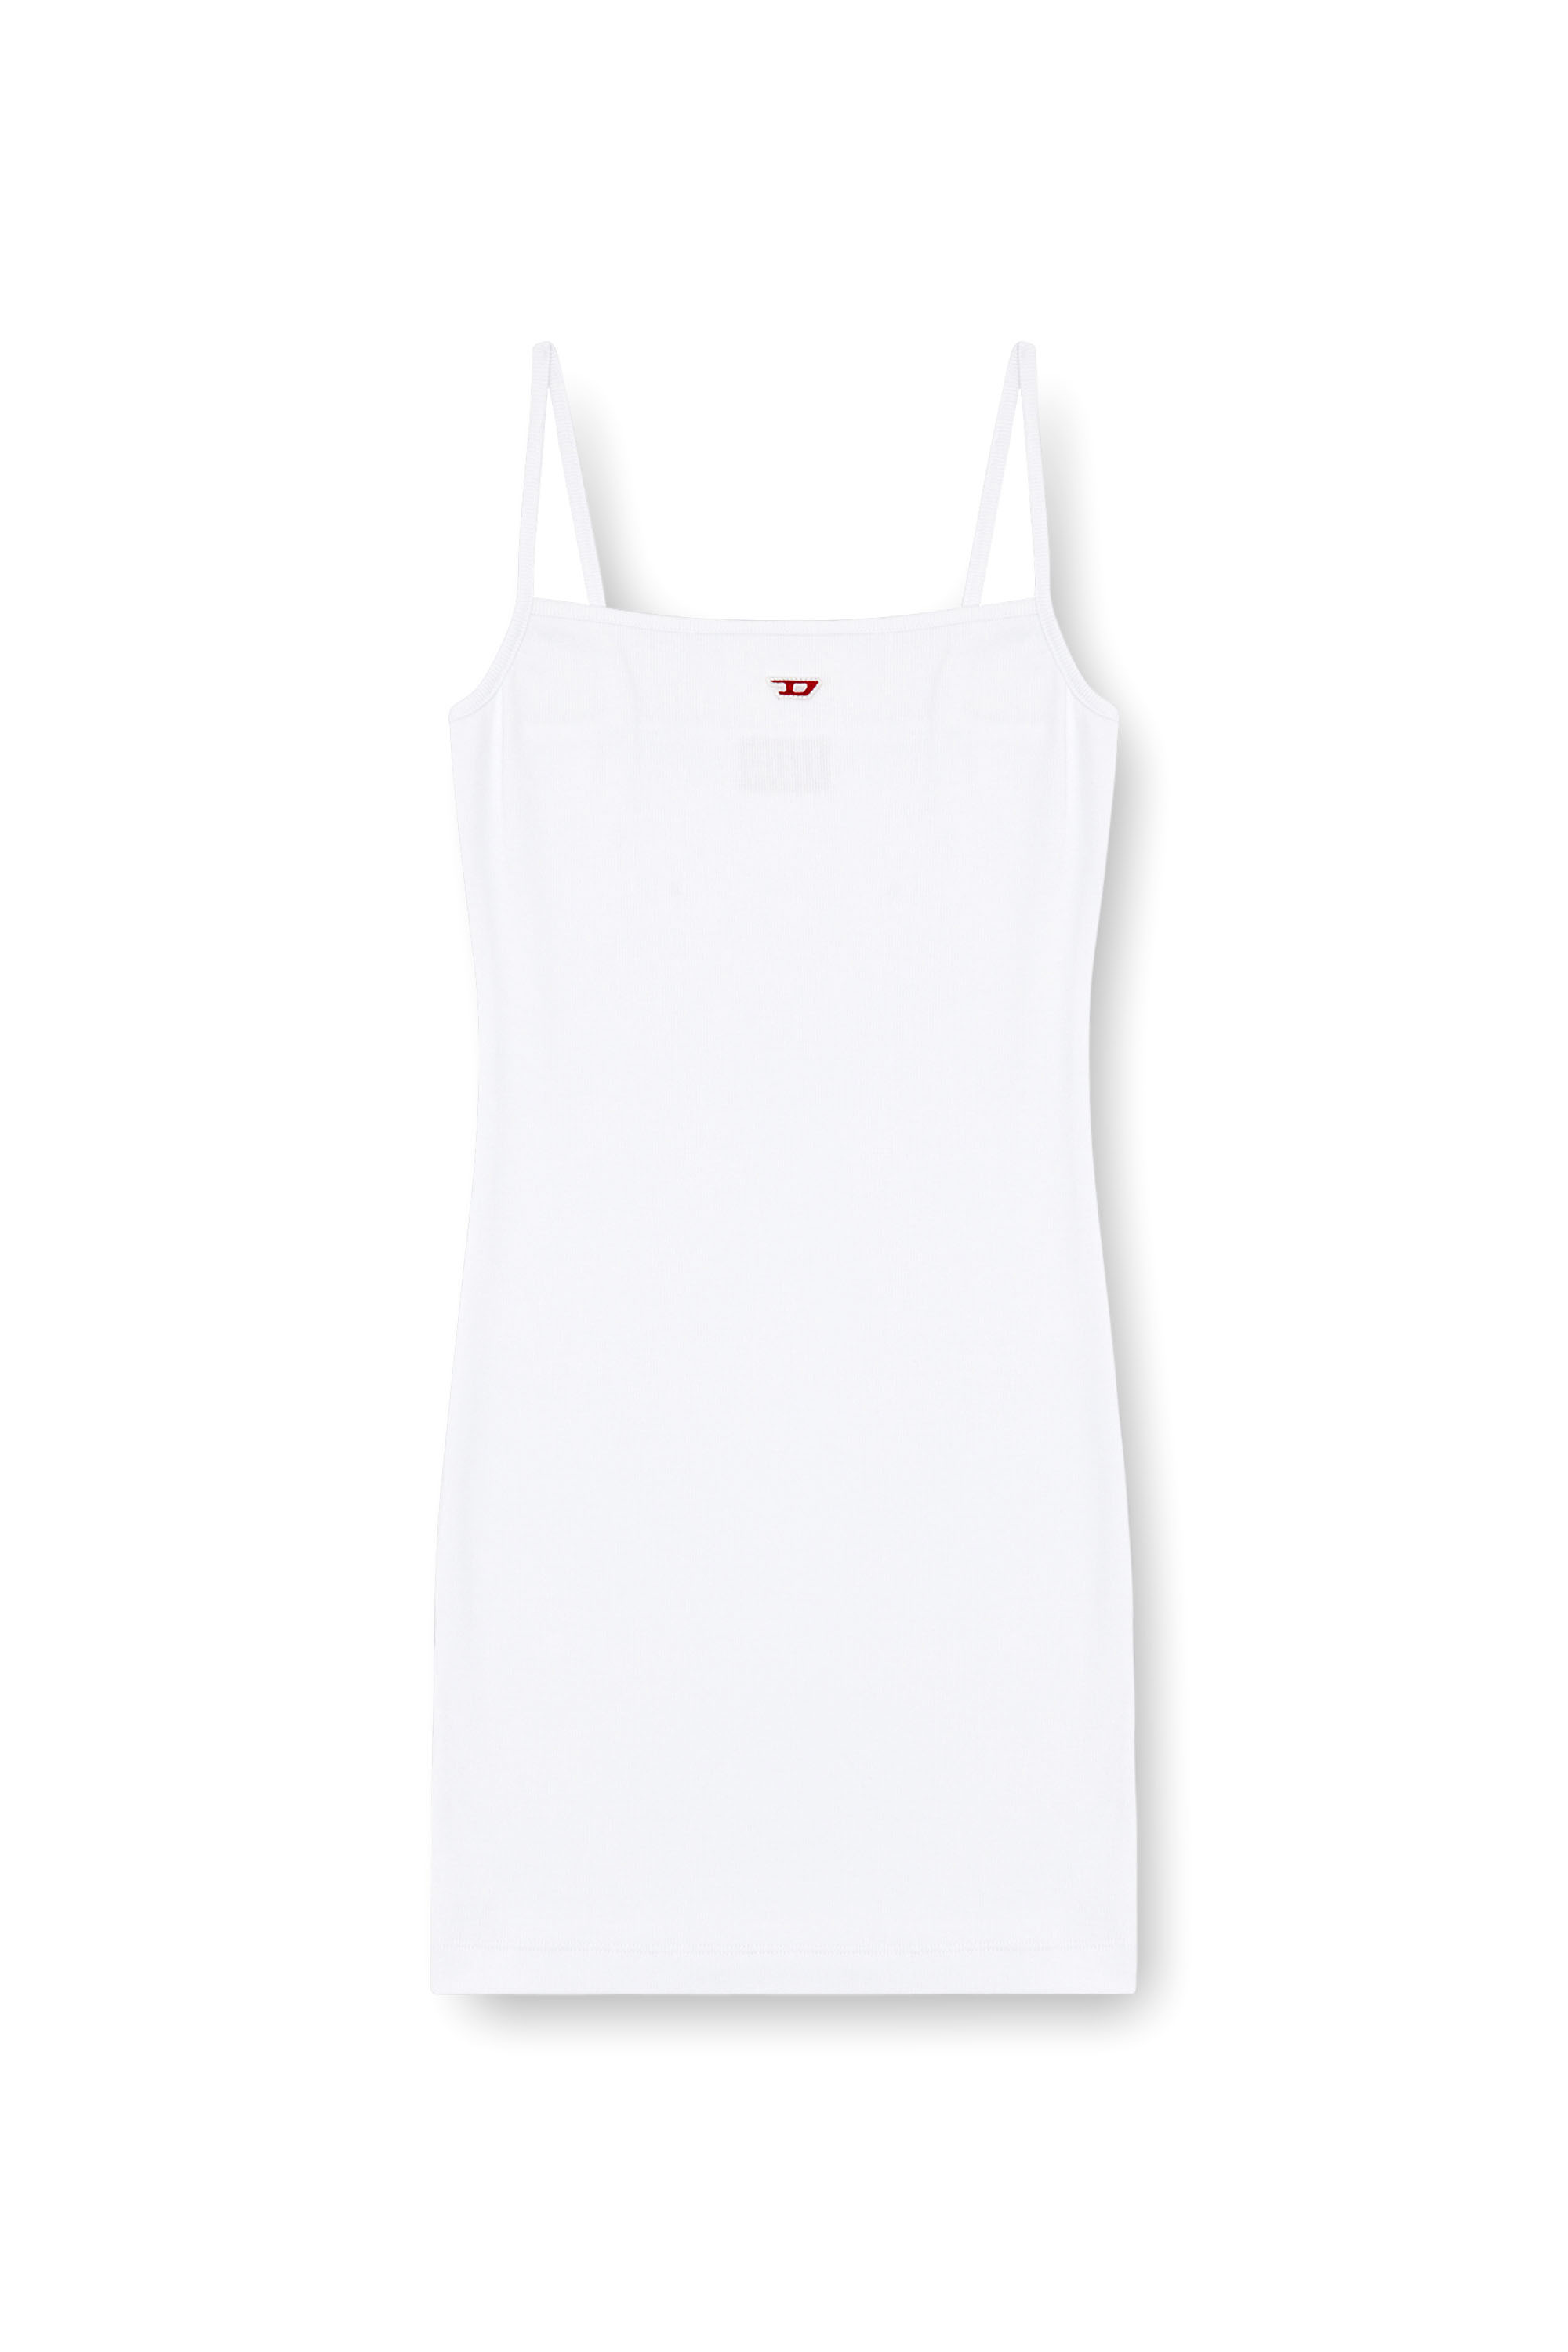 Diesel - D-HOPY-D, Female Short slip dress with D logo in ホワイト - Image 4